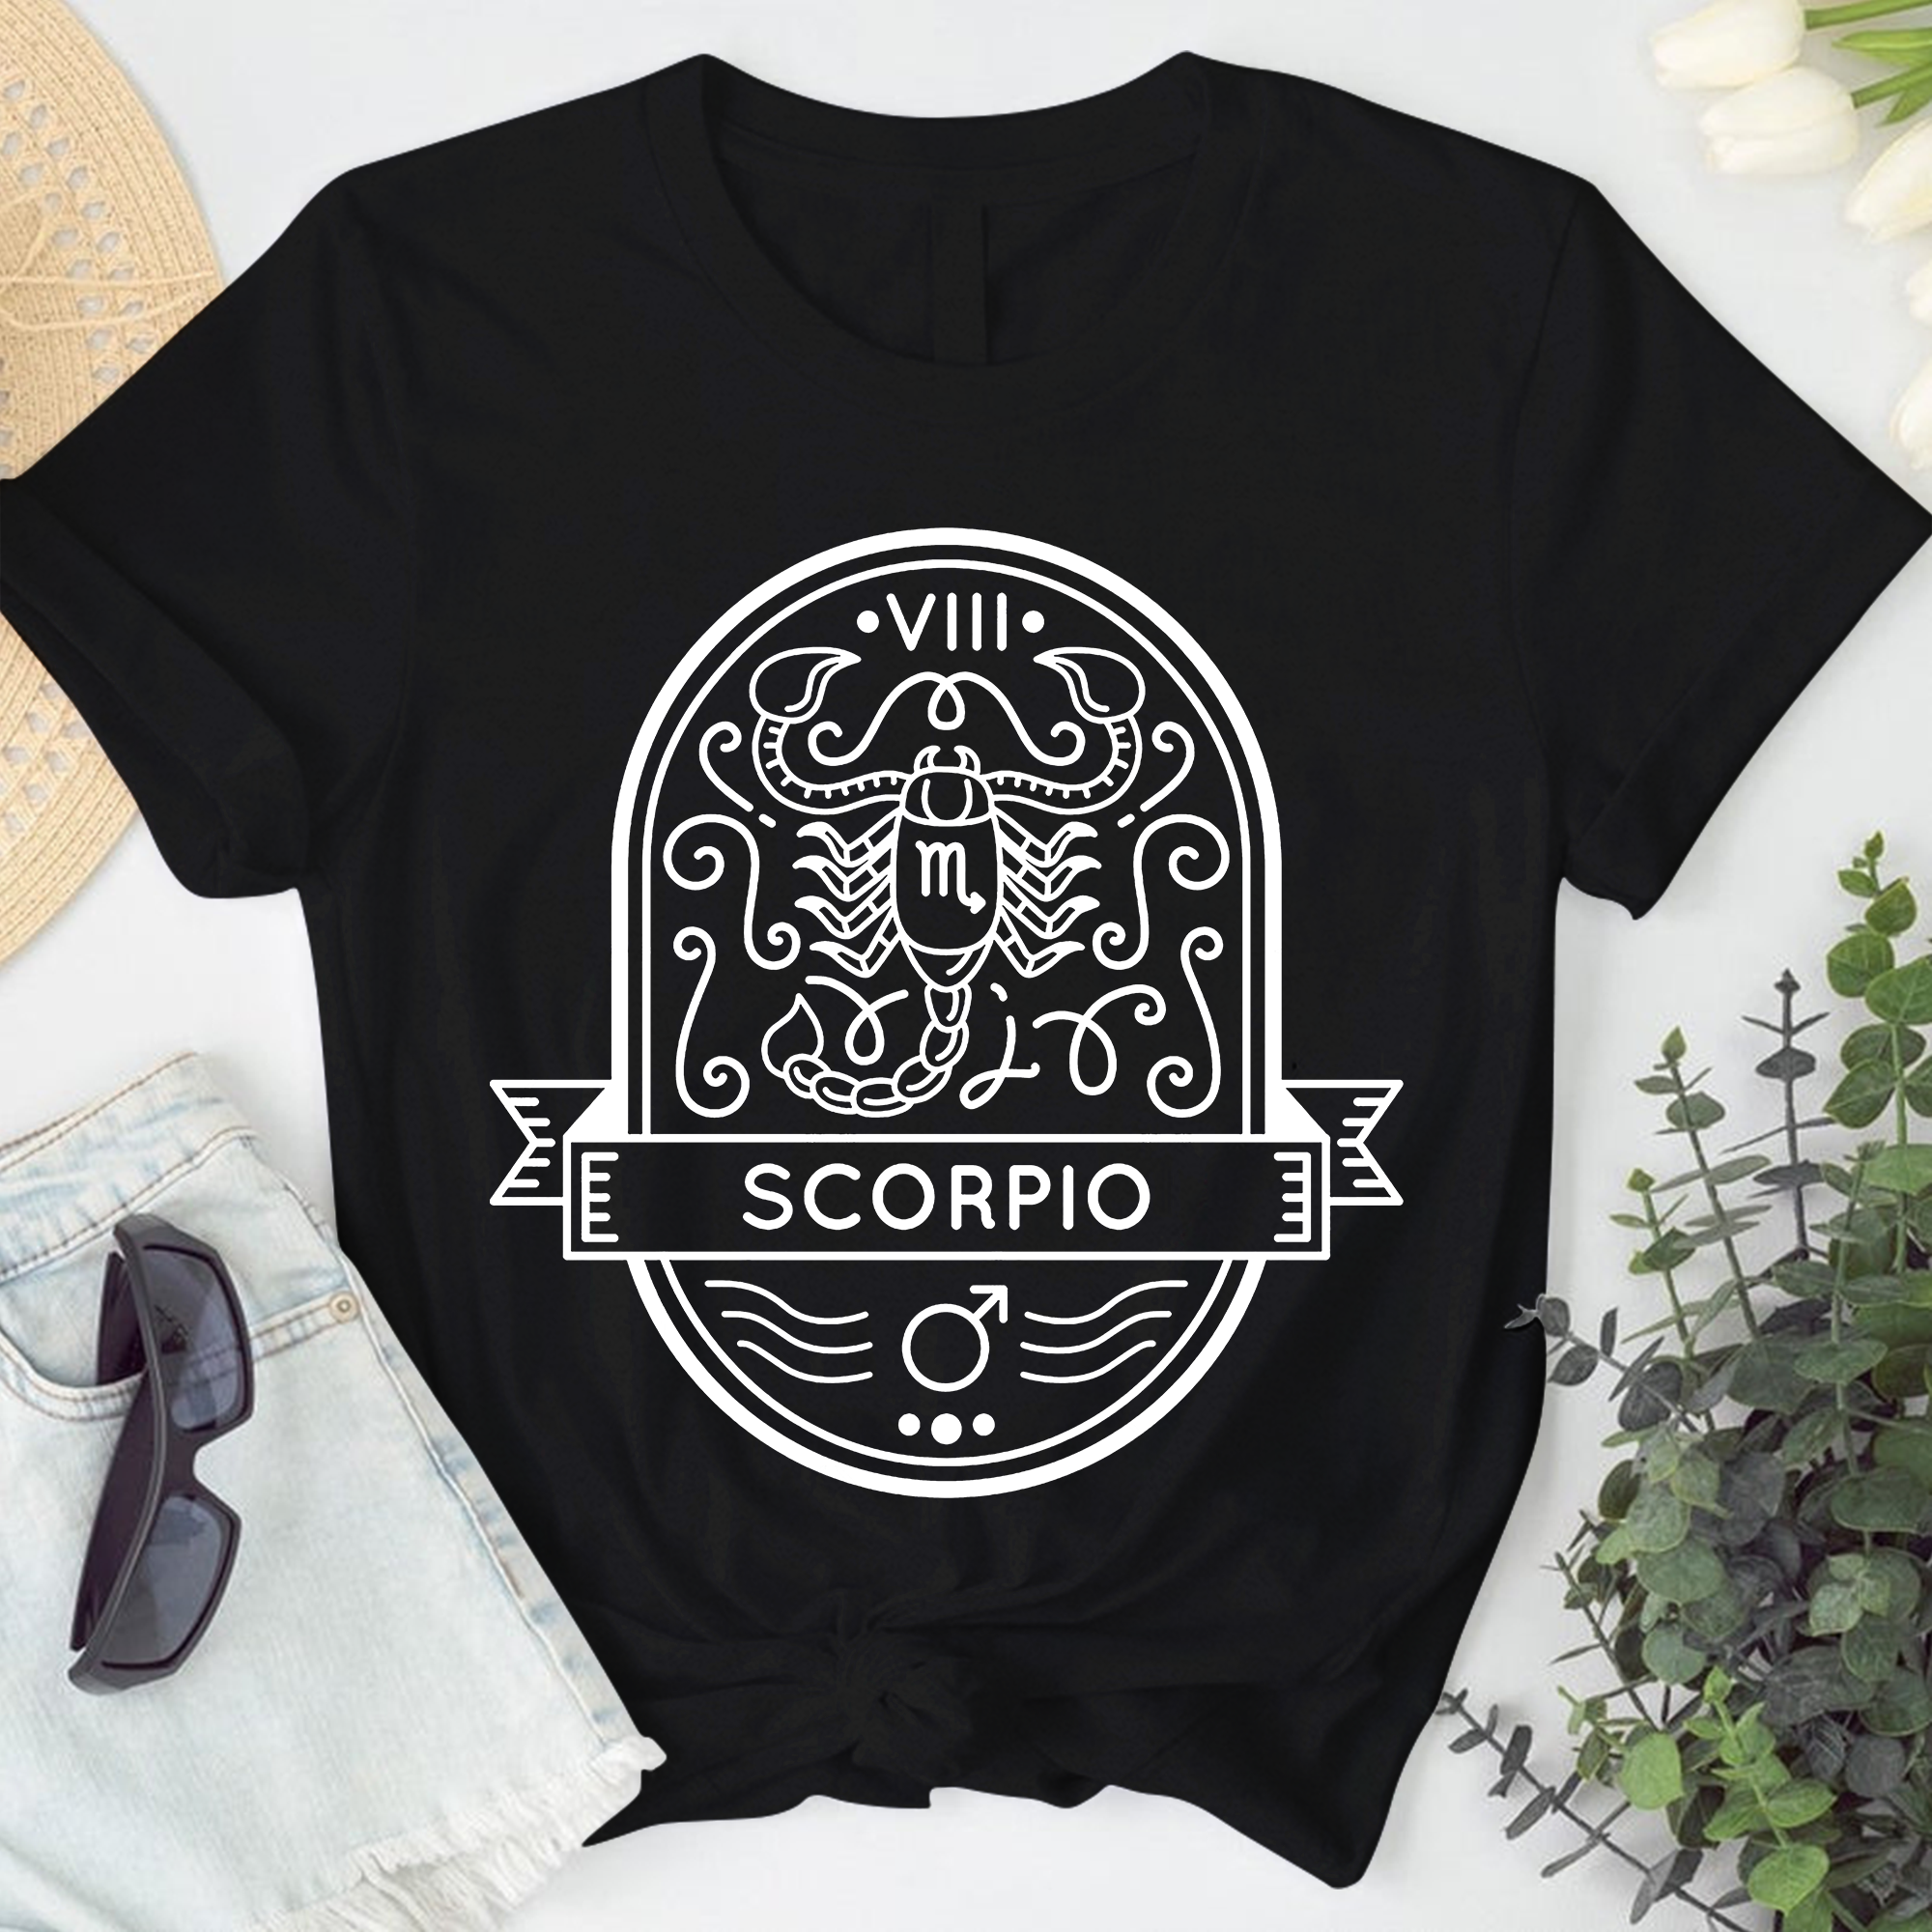 Scorpio Astrology Shirt, Zodiac Scorpio Birthday Gift, Horoscope Constellations Shirt